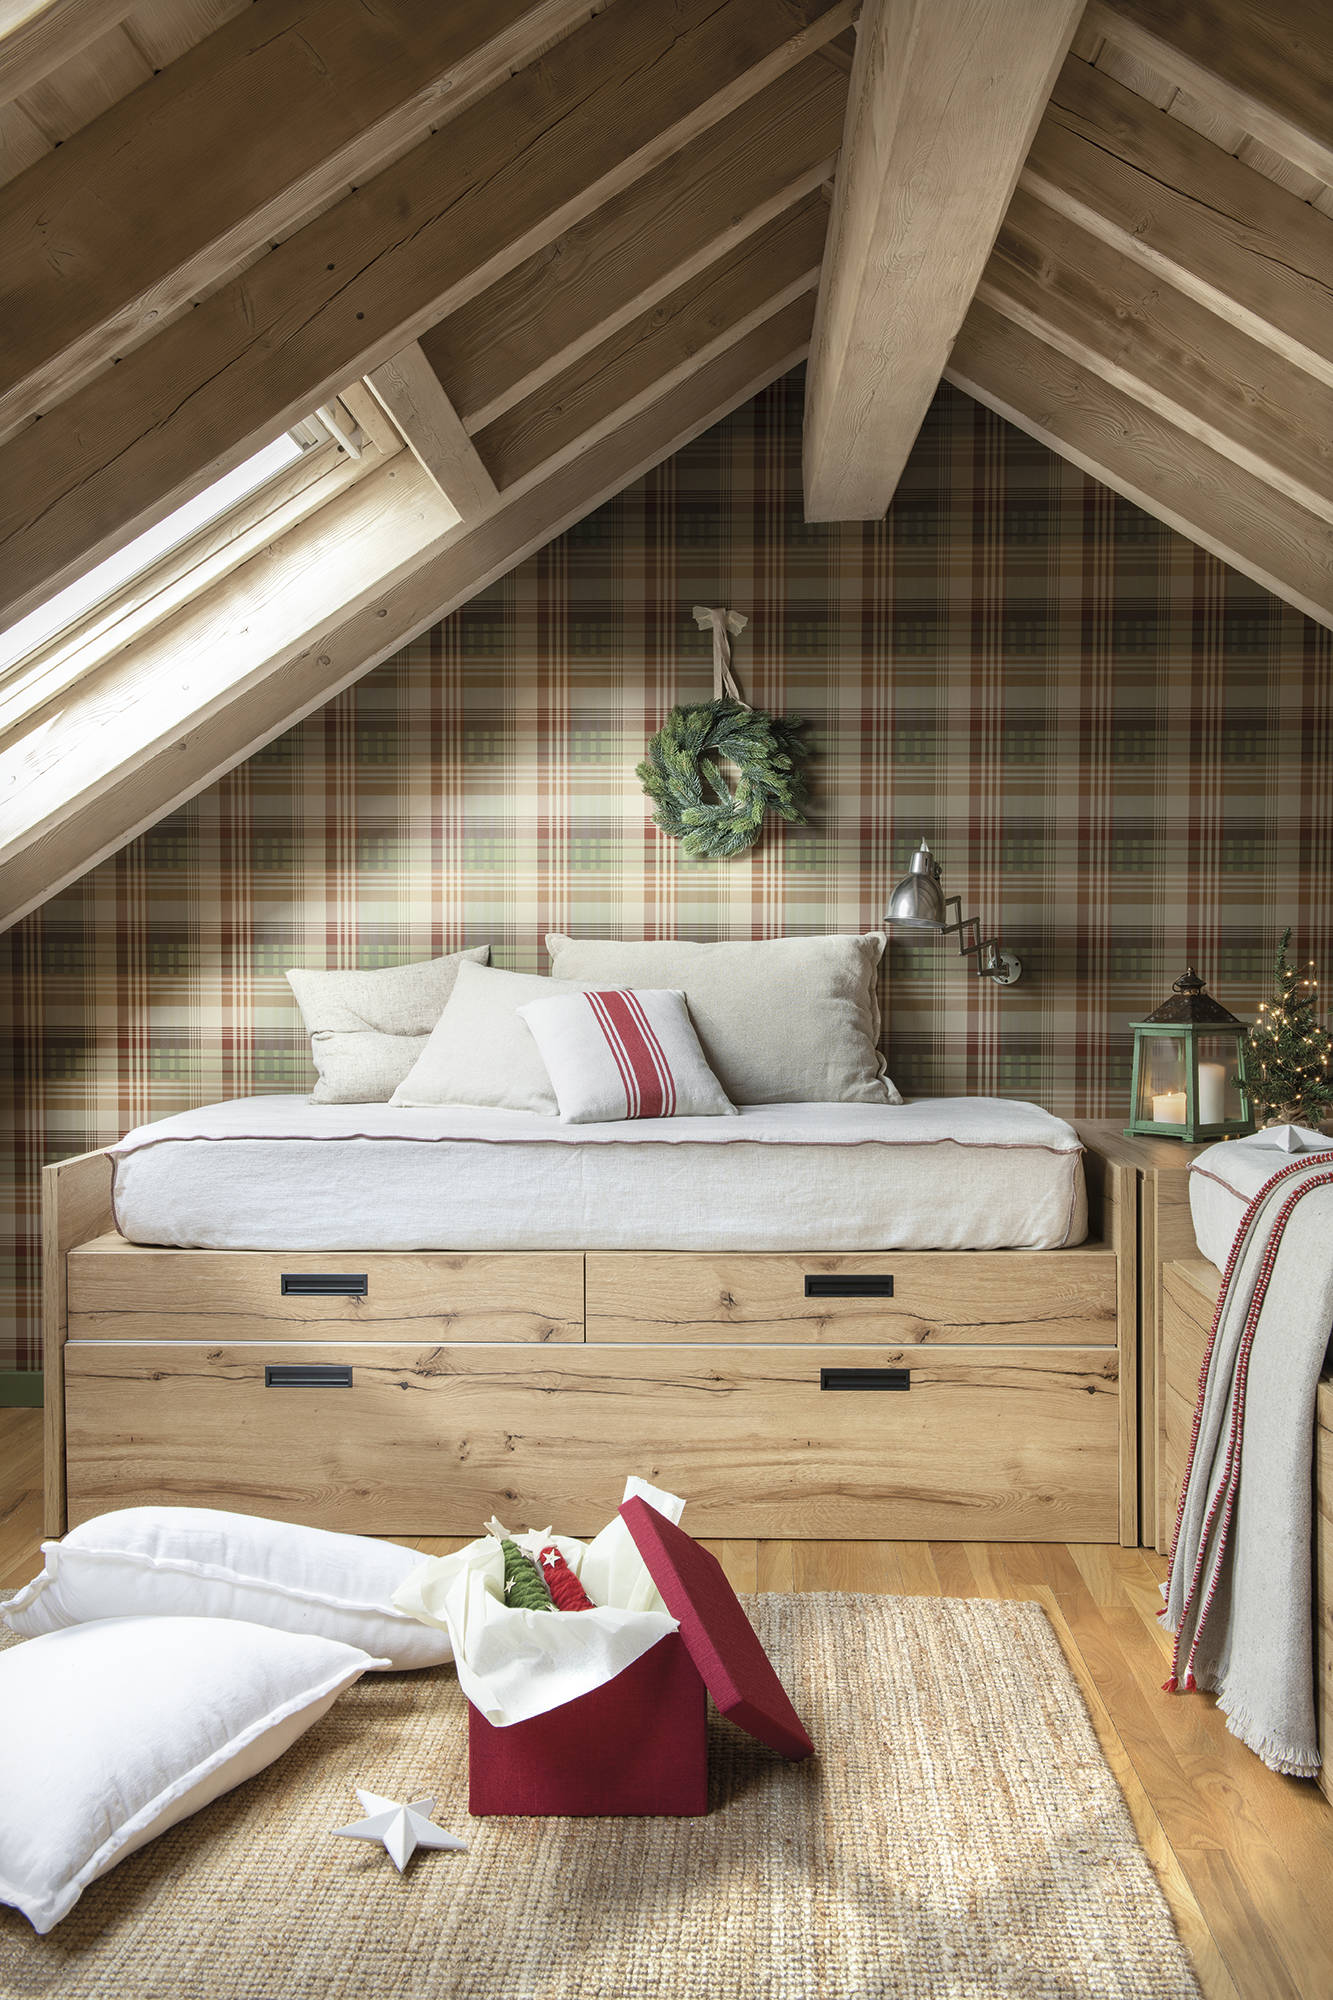 Dormitorio juvenil abuhardillado con papel pintado de caudros y dos camas de madera.